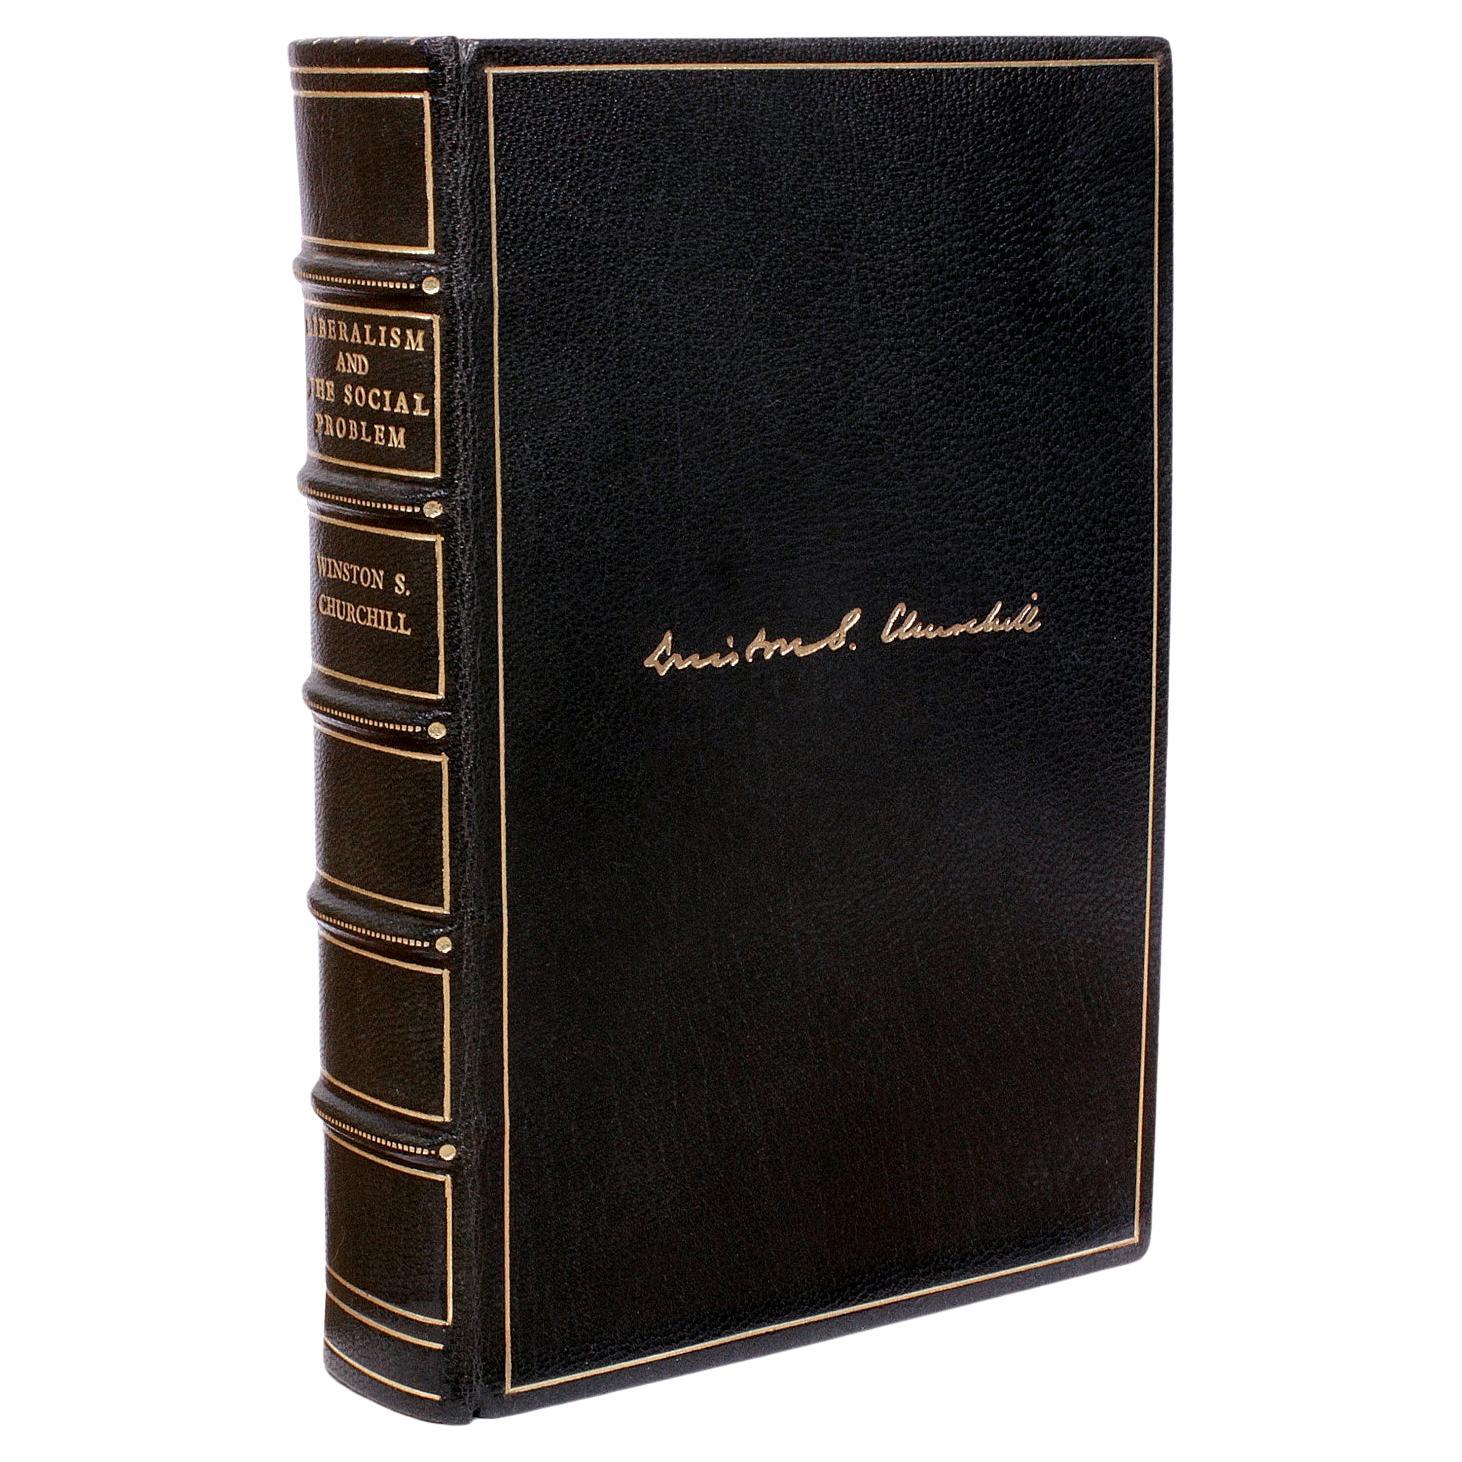 Winston CHURCHILL. Liberalismus und das soziale Problem – FIRST EDITION – 1909